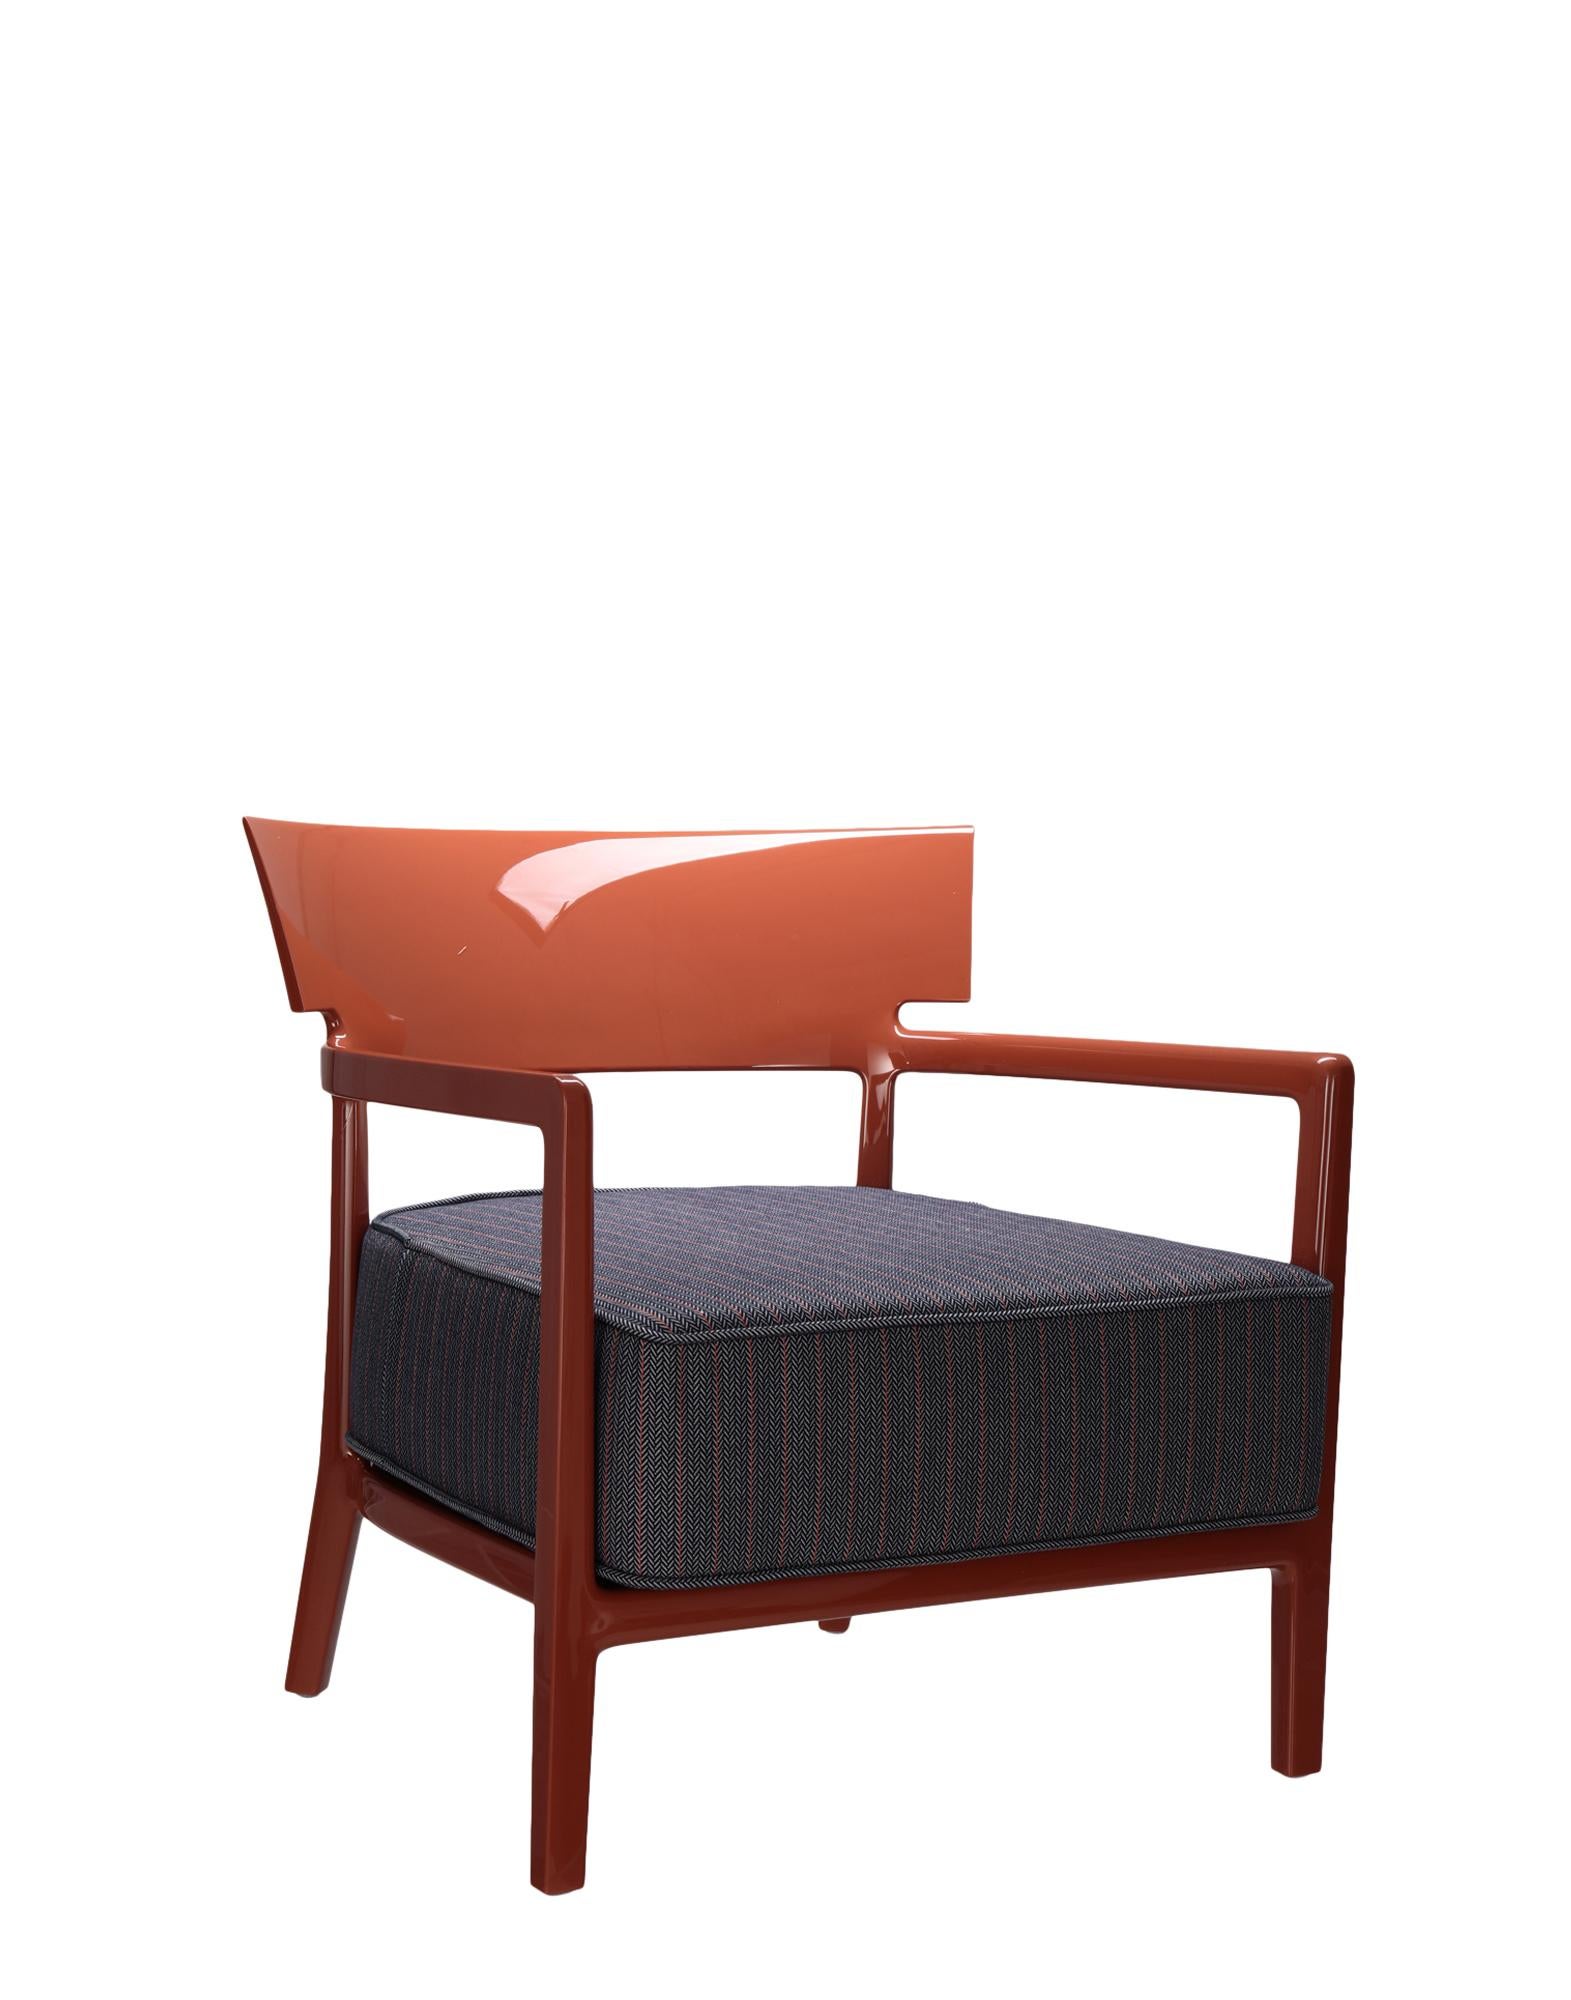 Ein Kara-Sessel mit klassisch strengen Linien umgibt einen bequemen Sitz. Die perfekte Kombination aus Formalismus und technologischer Innovation für ein Originalprodukt mit einer industriellen Ausstrahlung, die Kartells Sortiment an weichen